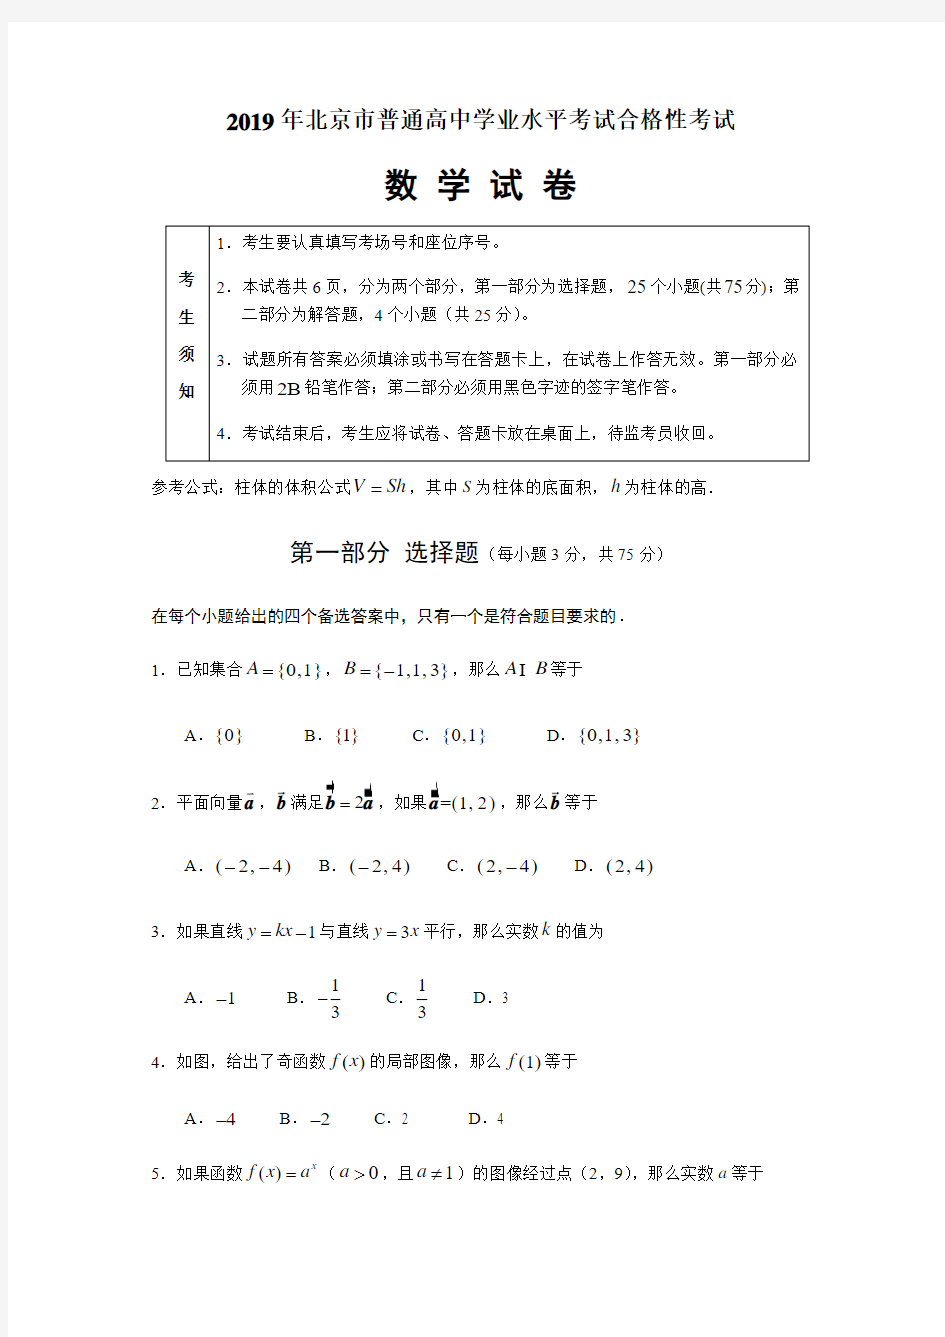 北京市2018年普通高中学业水平考试合格性考试文件-共13页